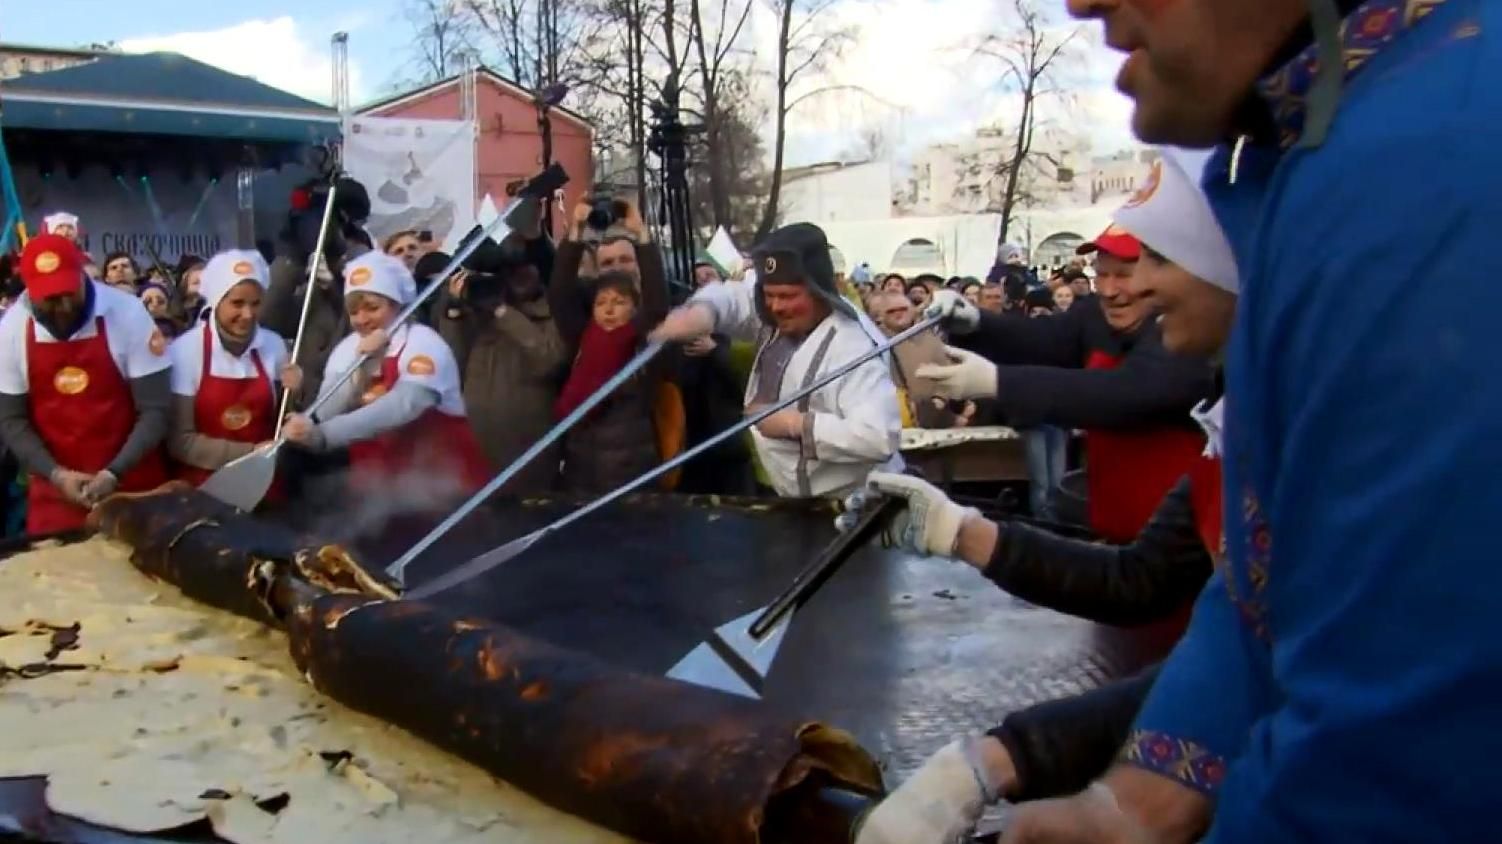 Празднование Масленицы в Москве закончилось провалом